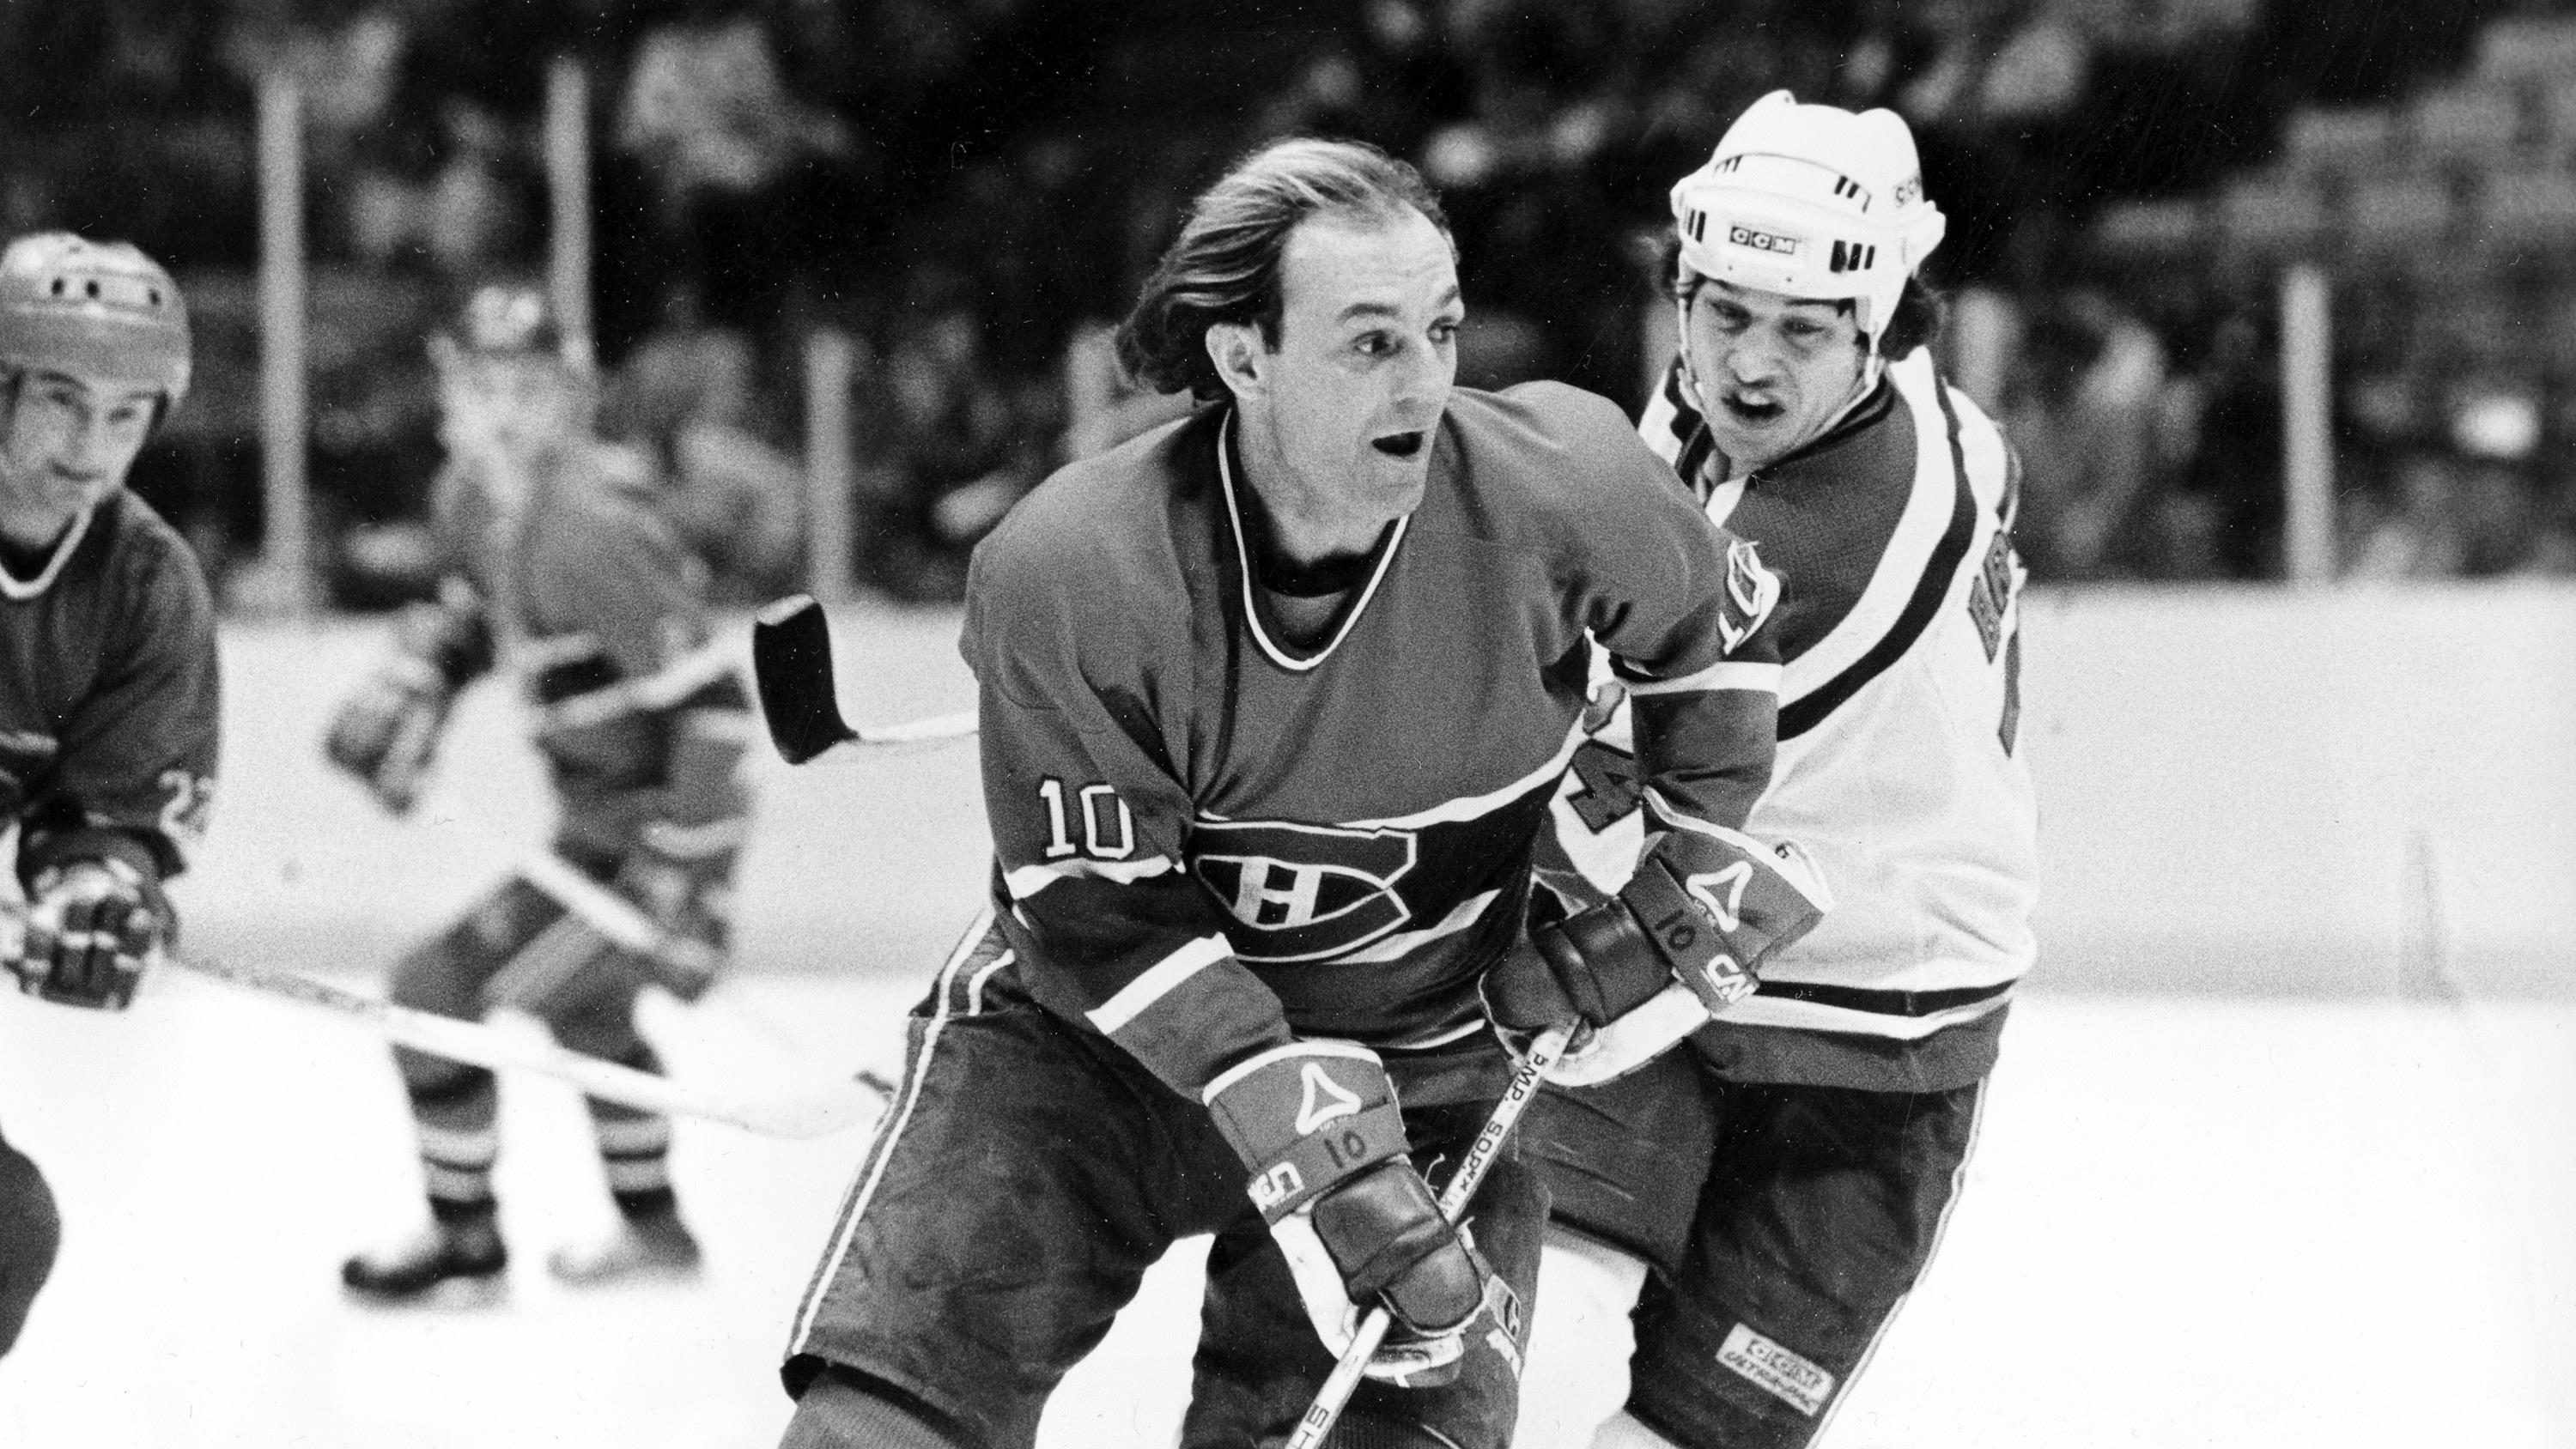 Le numéro 10 des Canadiens de Montréal, est décédé
Le numéro 10 des Canadiens de Montréal, est décédé